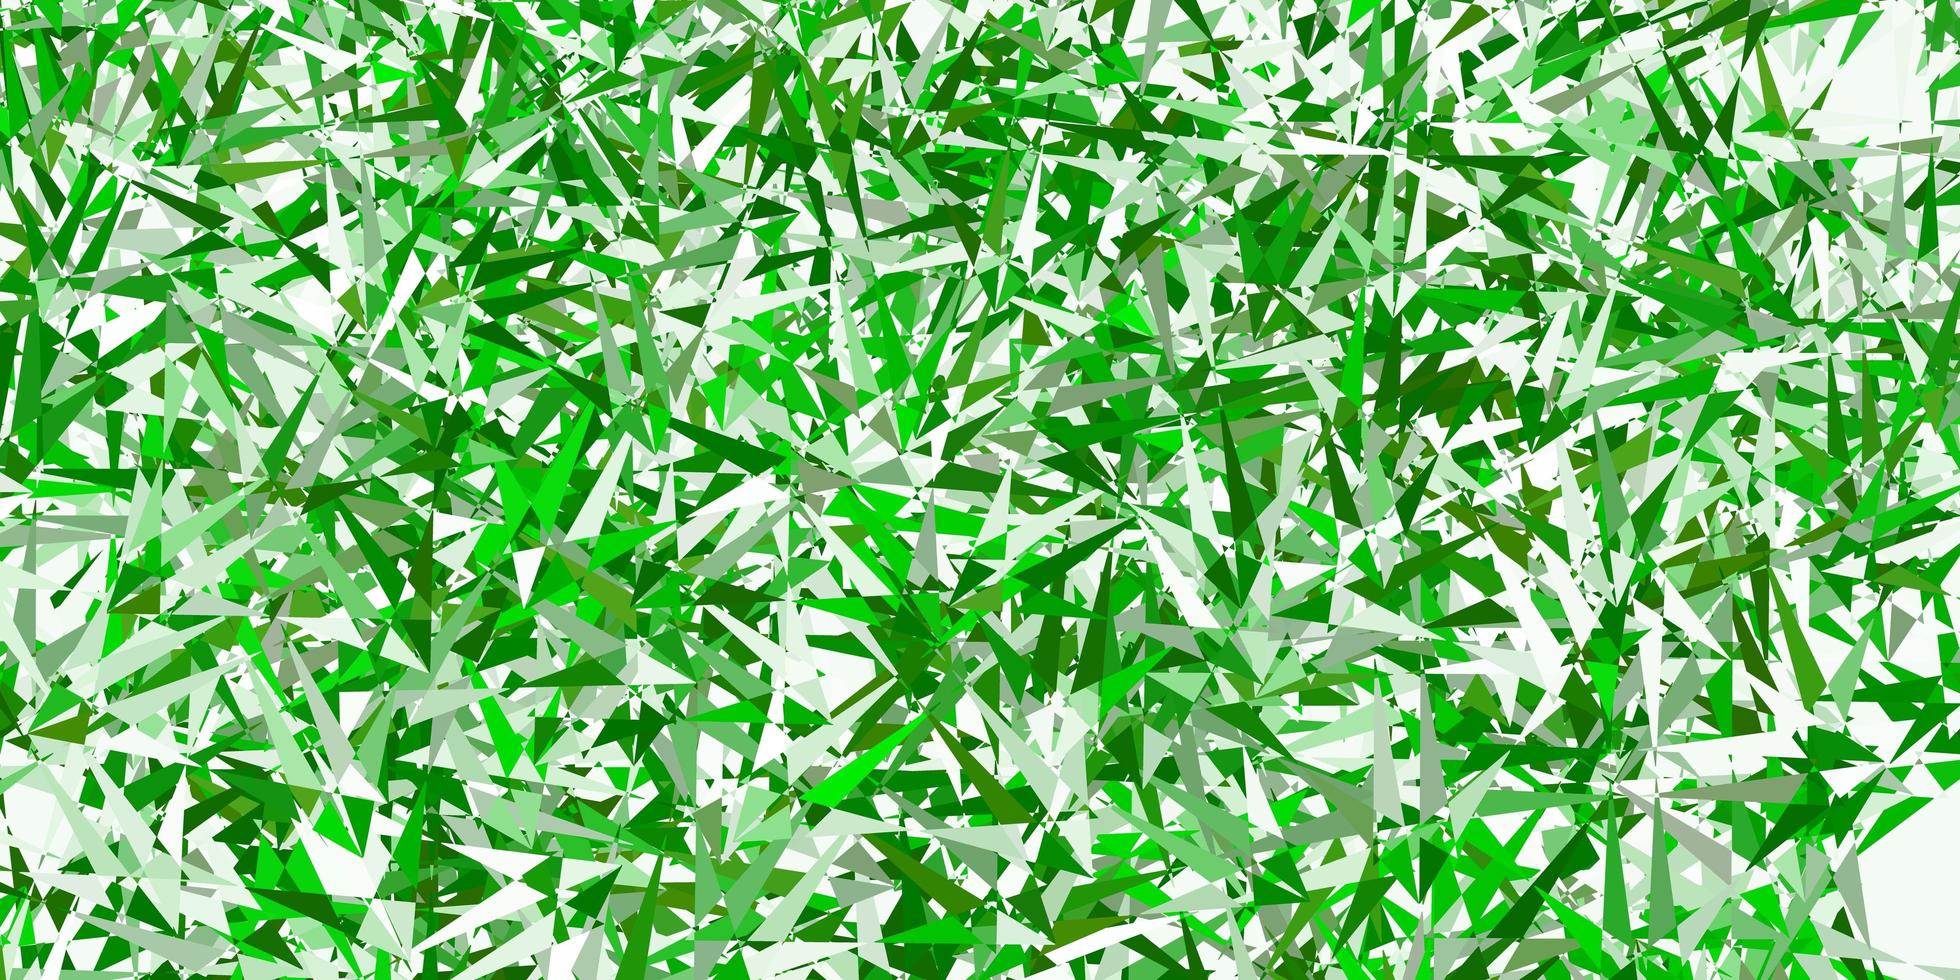 textura de vetor verde claro com triângulos aleatórios.